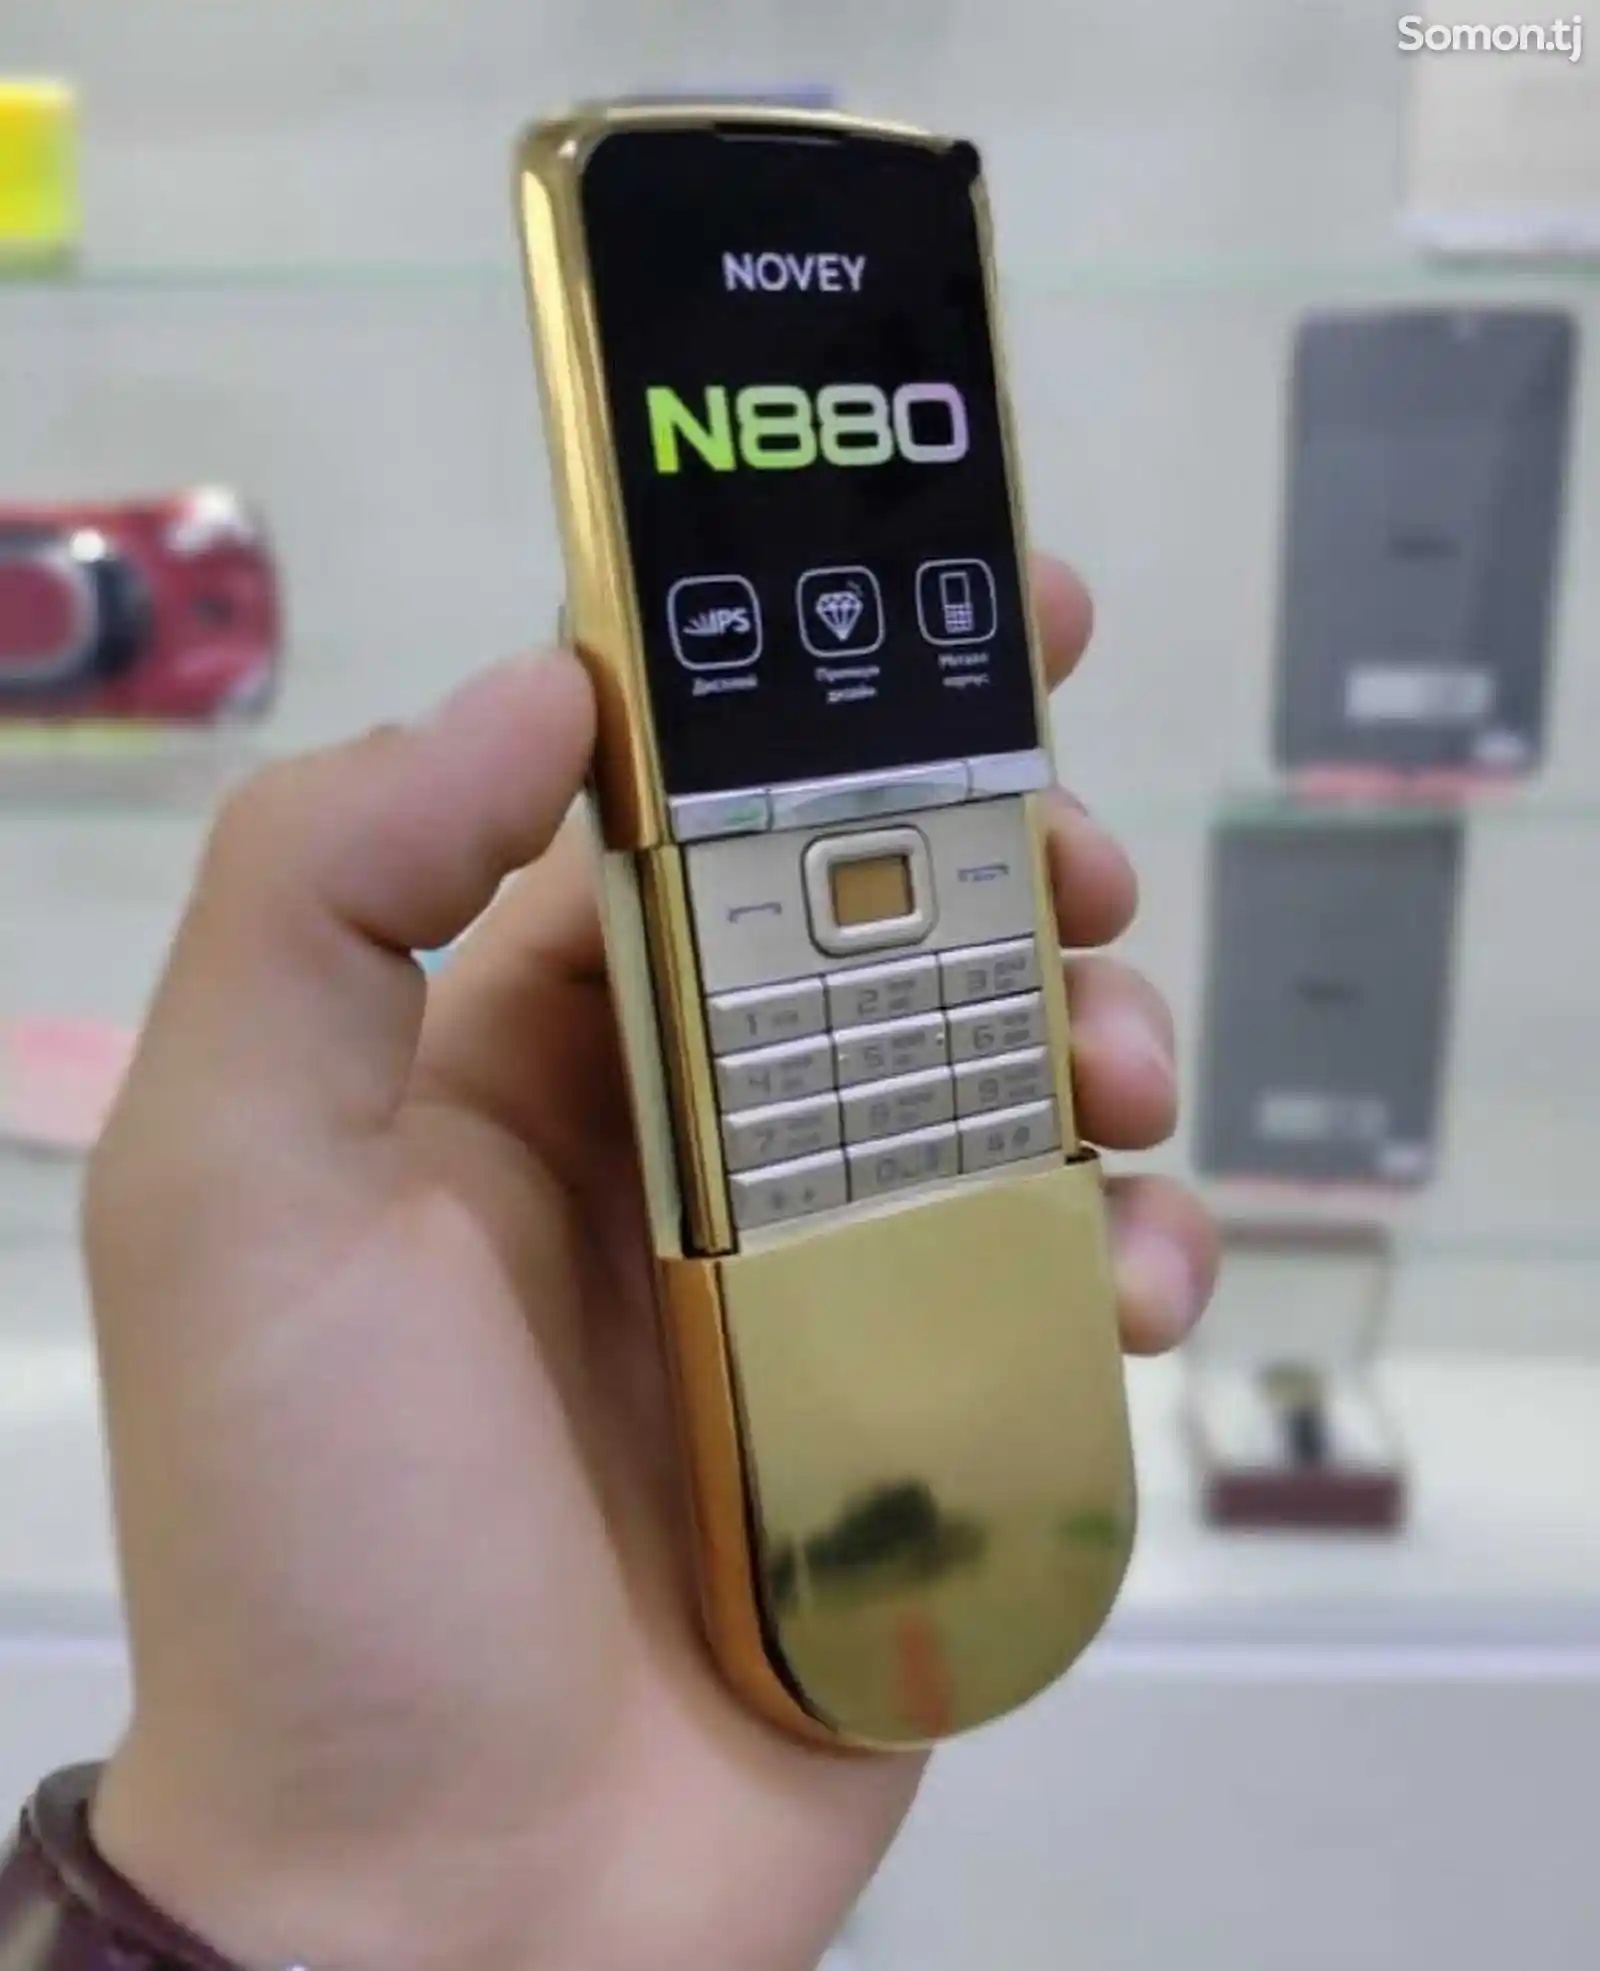 Novey N880-8